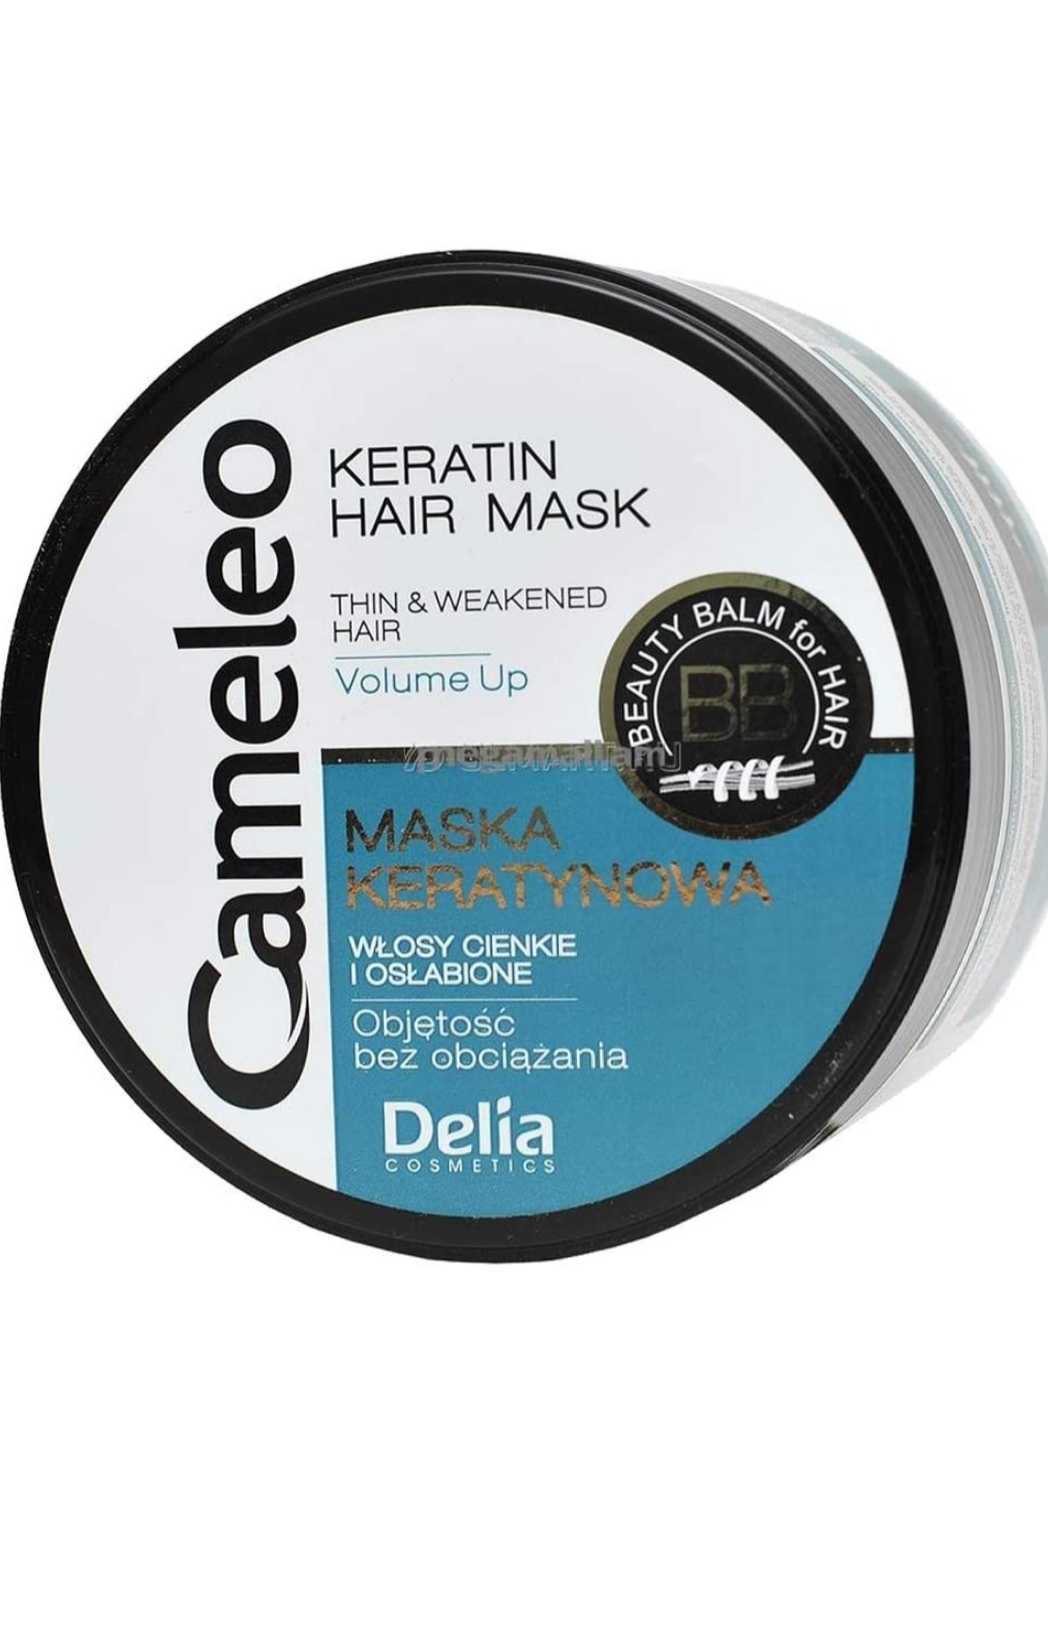 ماسک کراتین برای موهای نازک ، شکننده و ضعیف 200ML